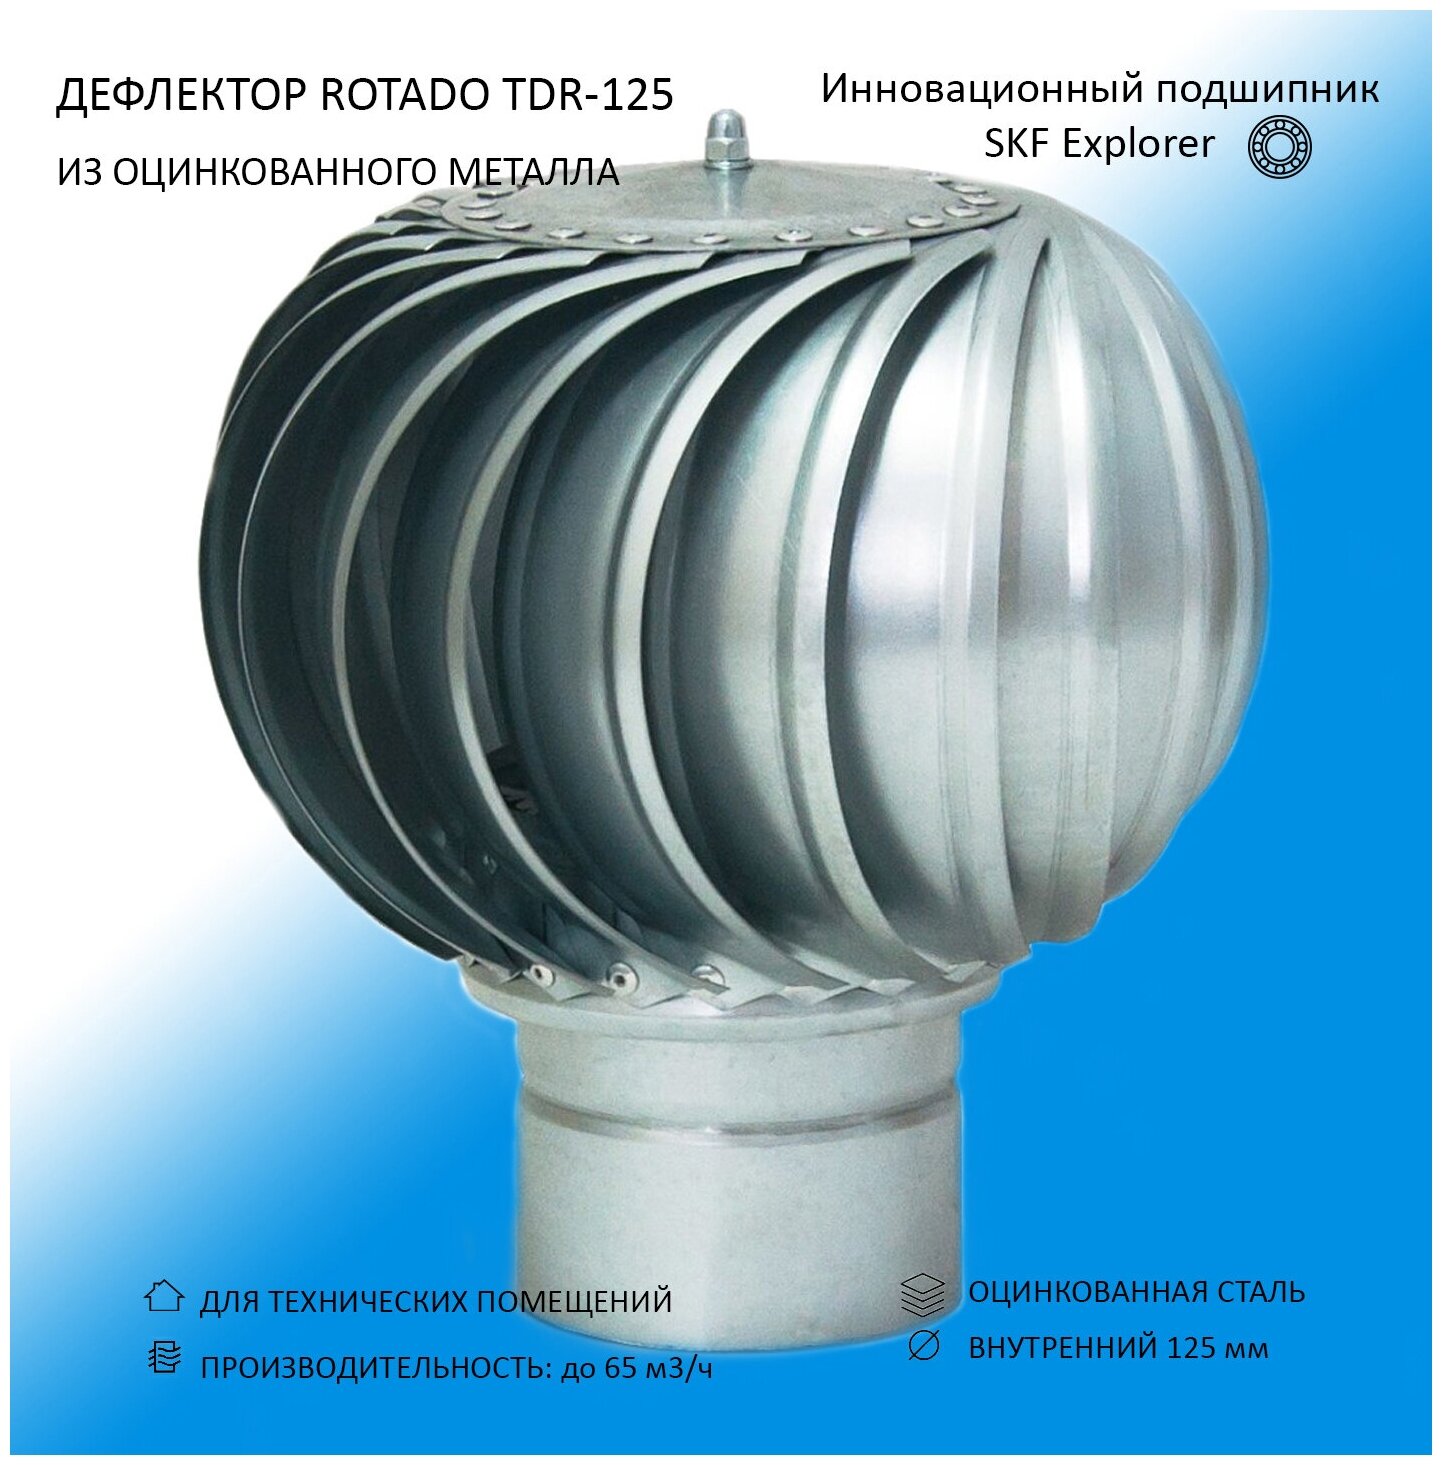 Дефлектор D125 ROTADO из оцинкованной стали